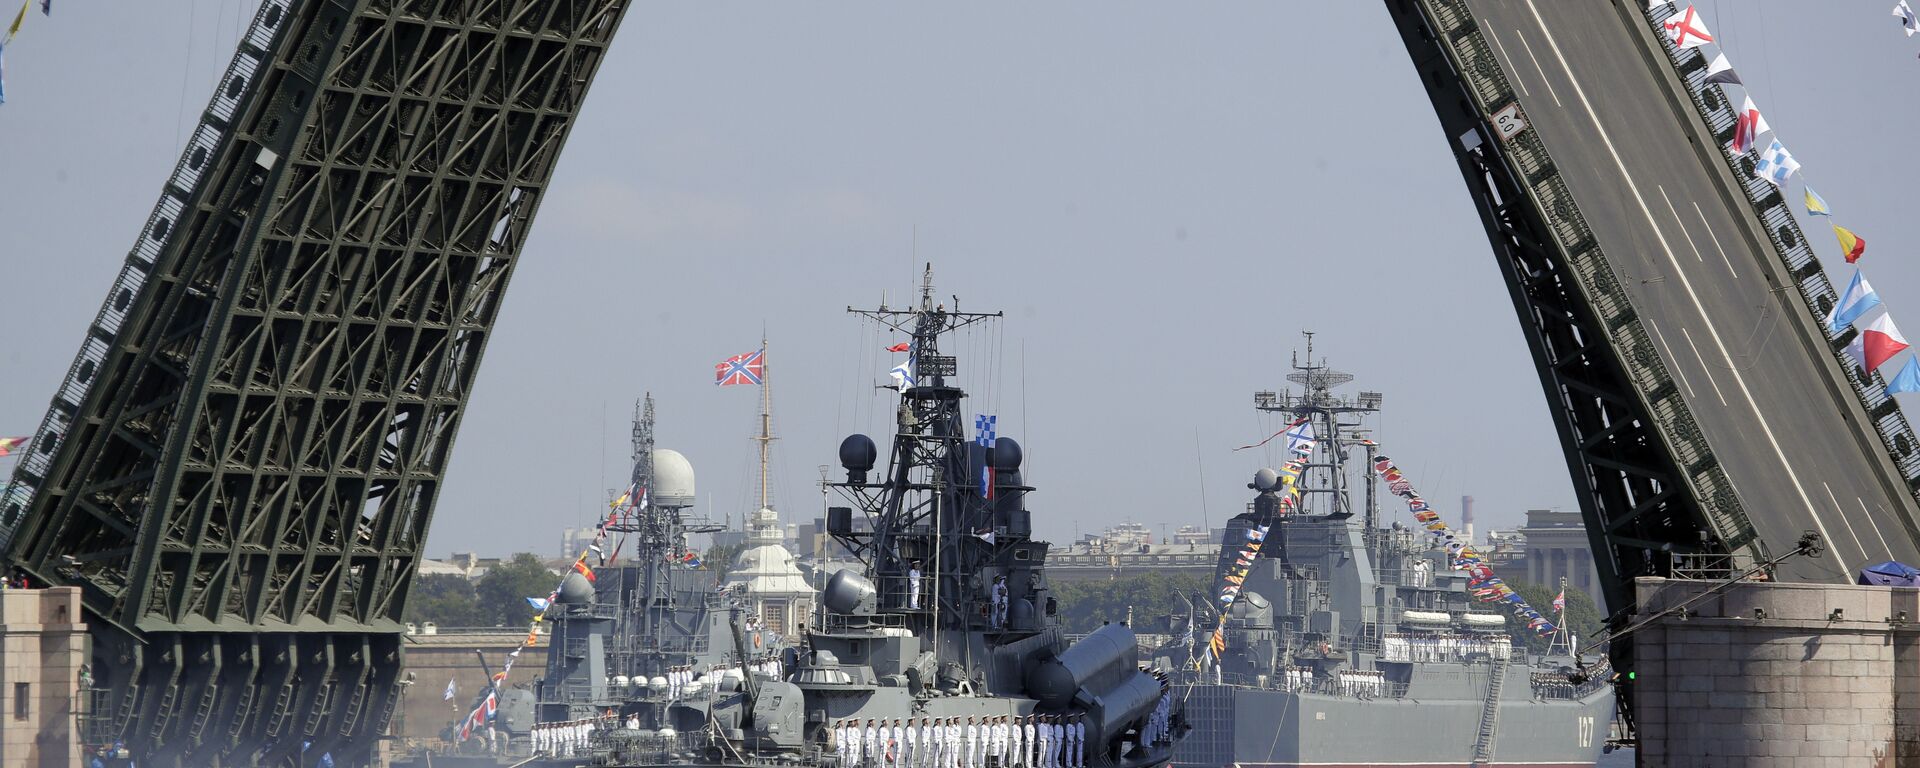 Ruski vojni brod plovi rekom Nevom tokom parade za Dan ratne mornarice Rusije u Sankt Peterburgu - Sputnik Srbija, 1920, 06.01.2020